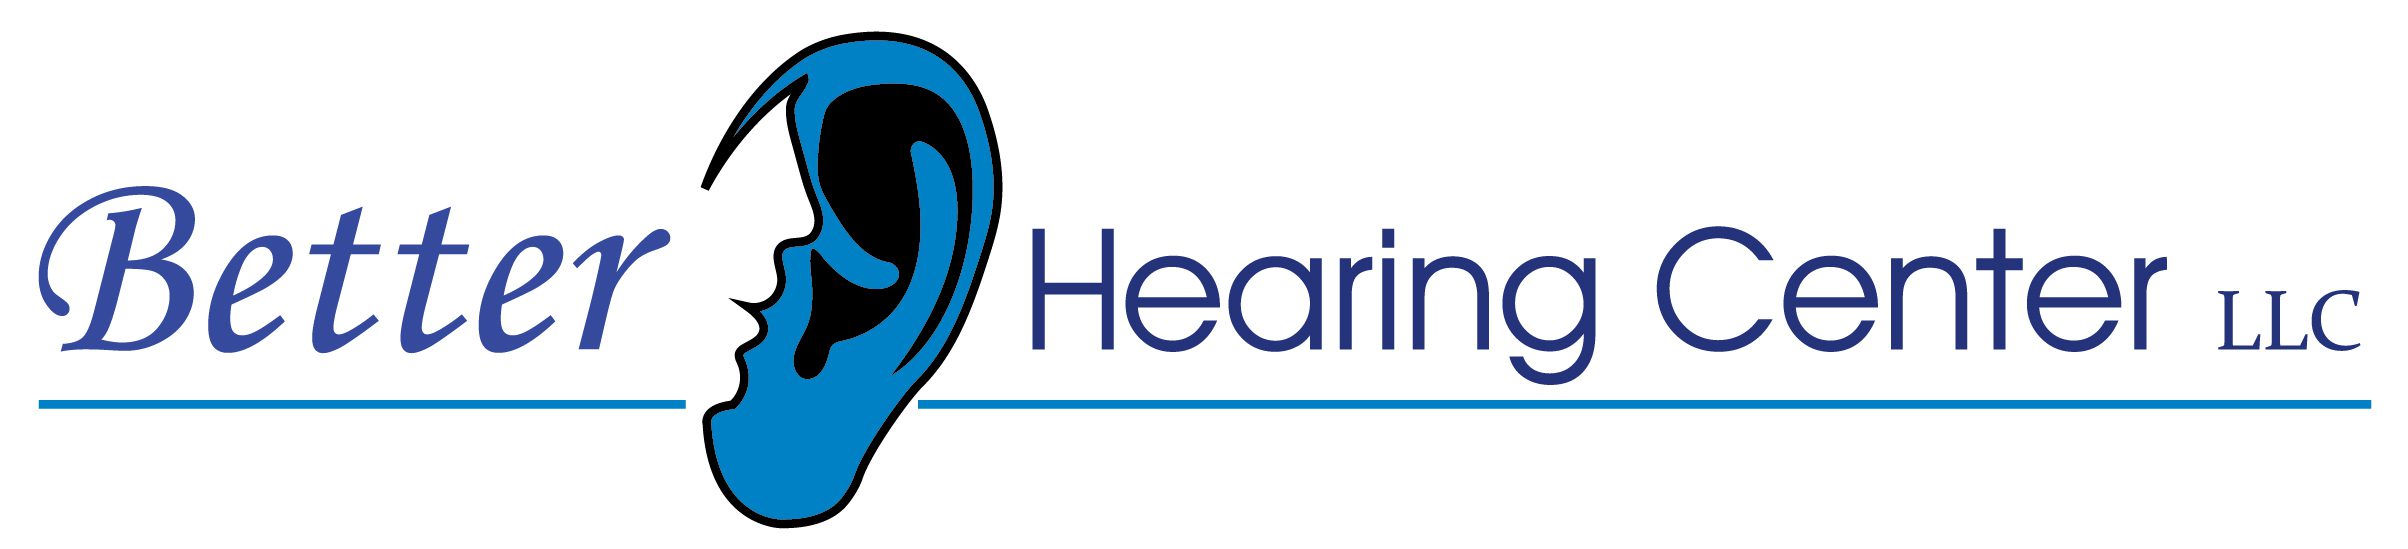 Better Hearing Center, LLC logo